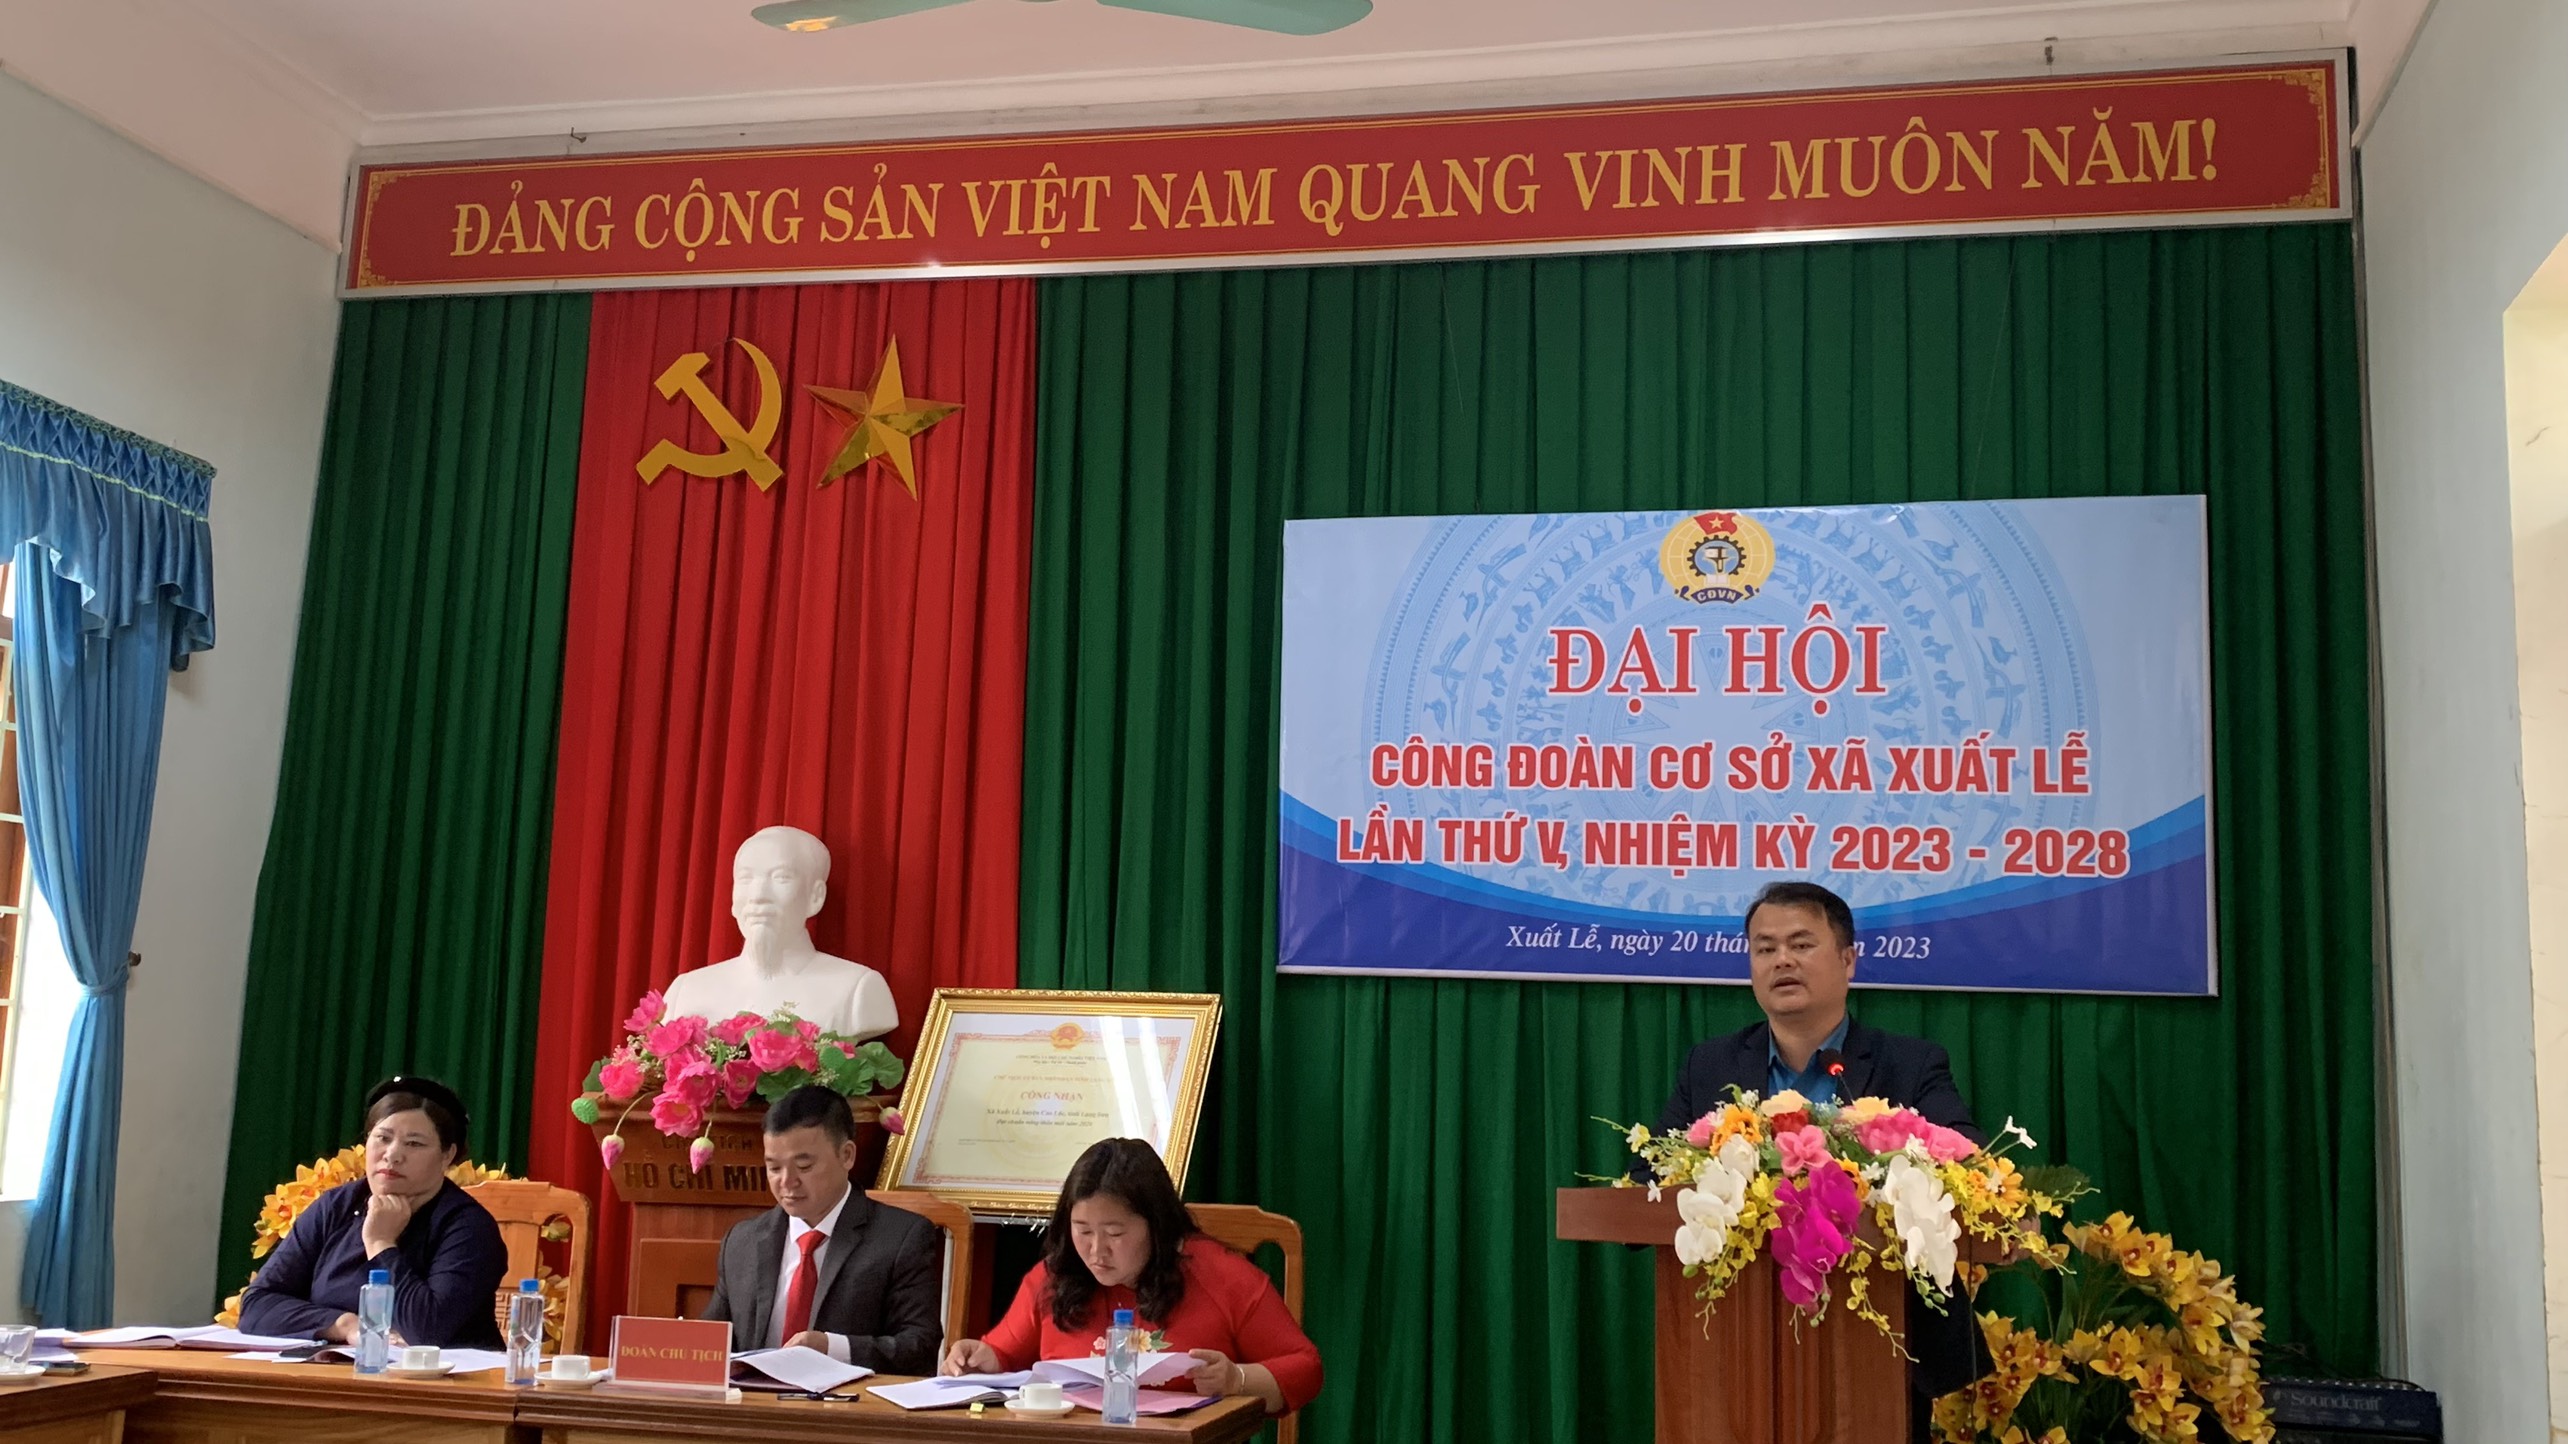   Tại Đại hội đồng chí Hà Văn Huân – Chủ tịch Liên đoàn Lao động huyện Cao Lộc đã biểu dương những thành tích đã đạt được trong nhiệm kỳ vừa qua và chỉ ra những mặt chưa đạt được trong nhiệm kỳ.